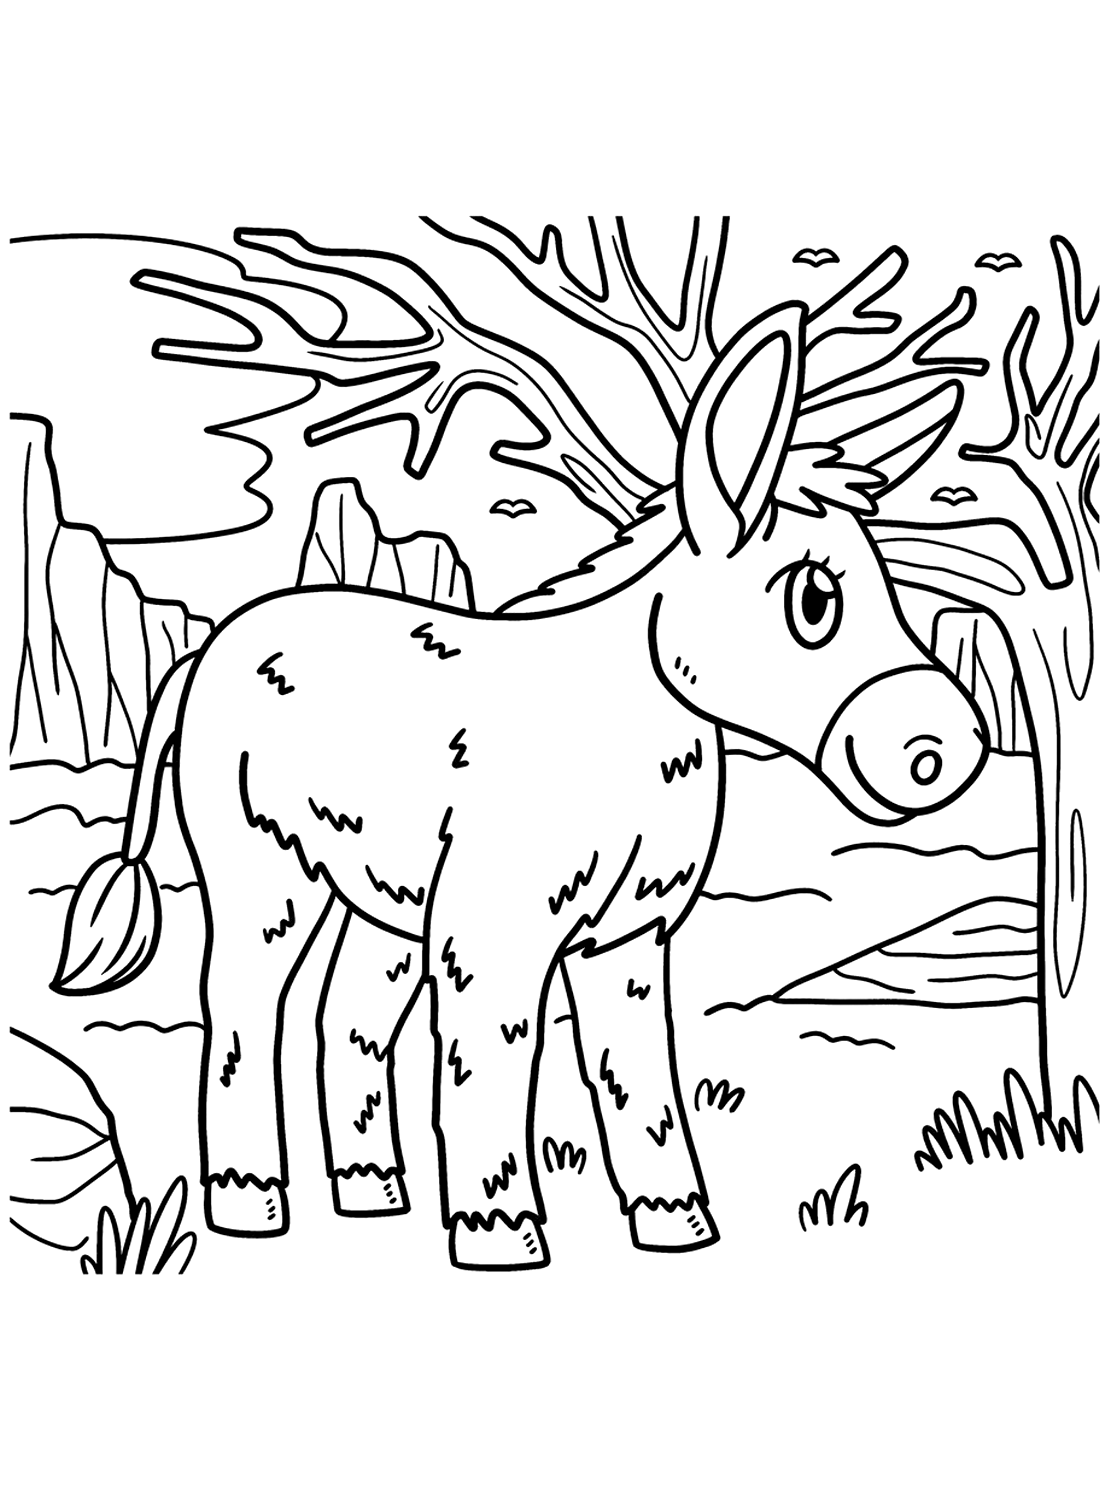 De ezel op de voorgrond van Donkey